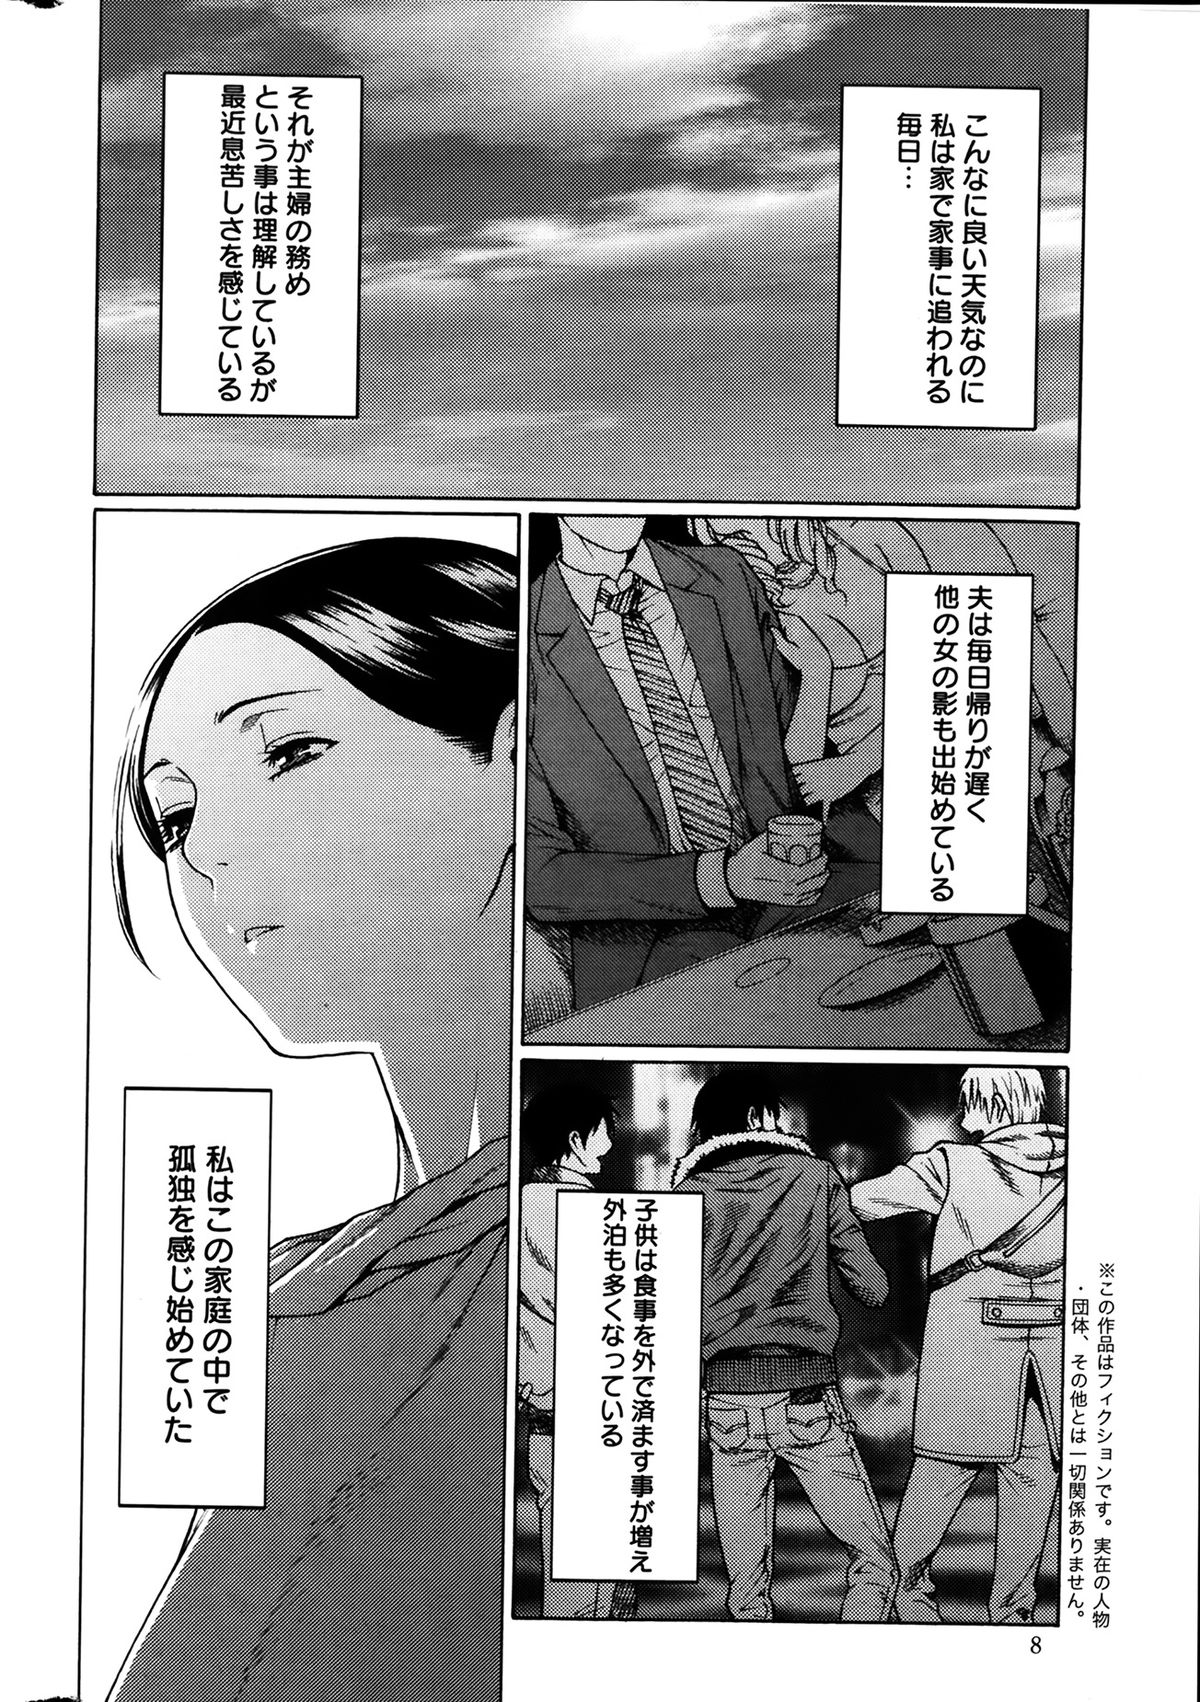 [Takasugi Kou] Madam Palace Ch.1-4 page 6 full